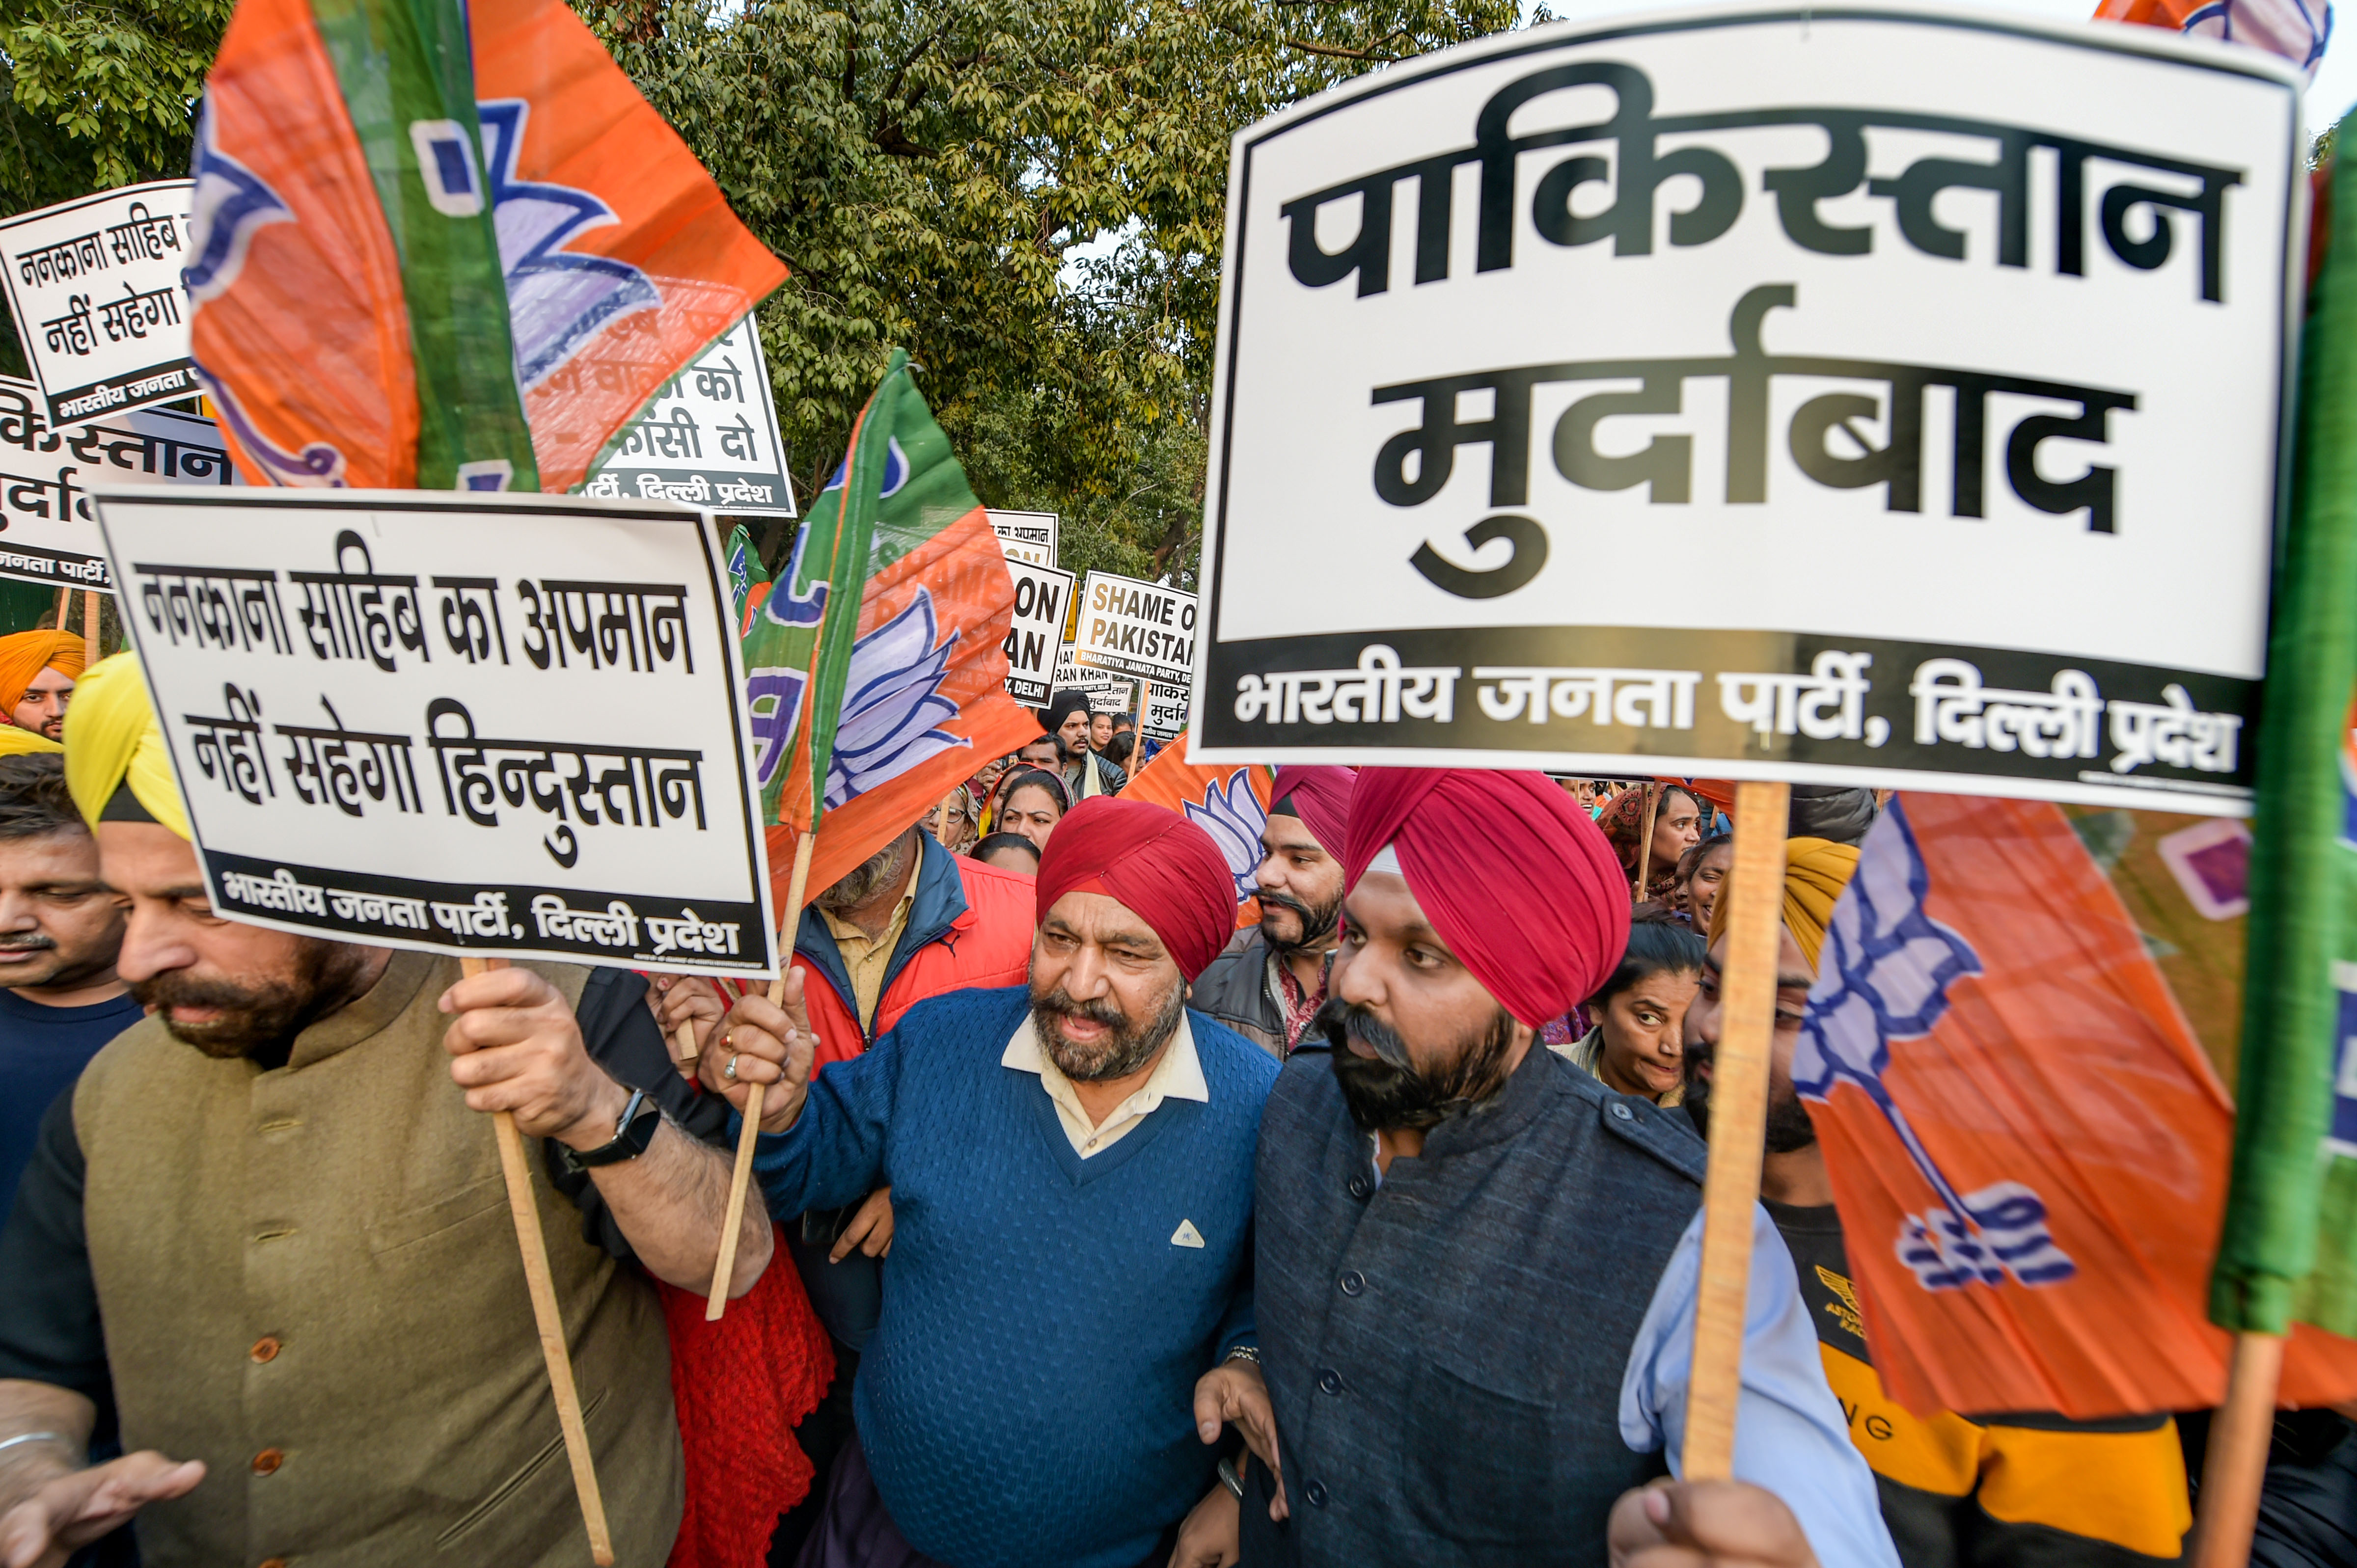 BJP members protest in Delhi against attack on Nankana Sahib Gurdwara in Pakistan